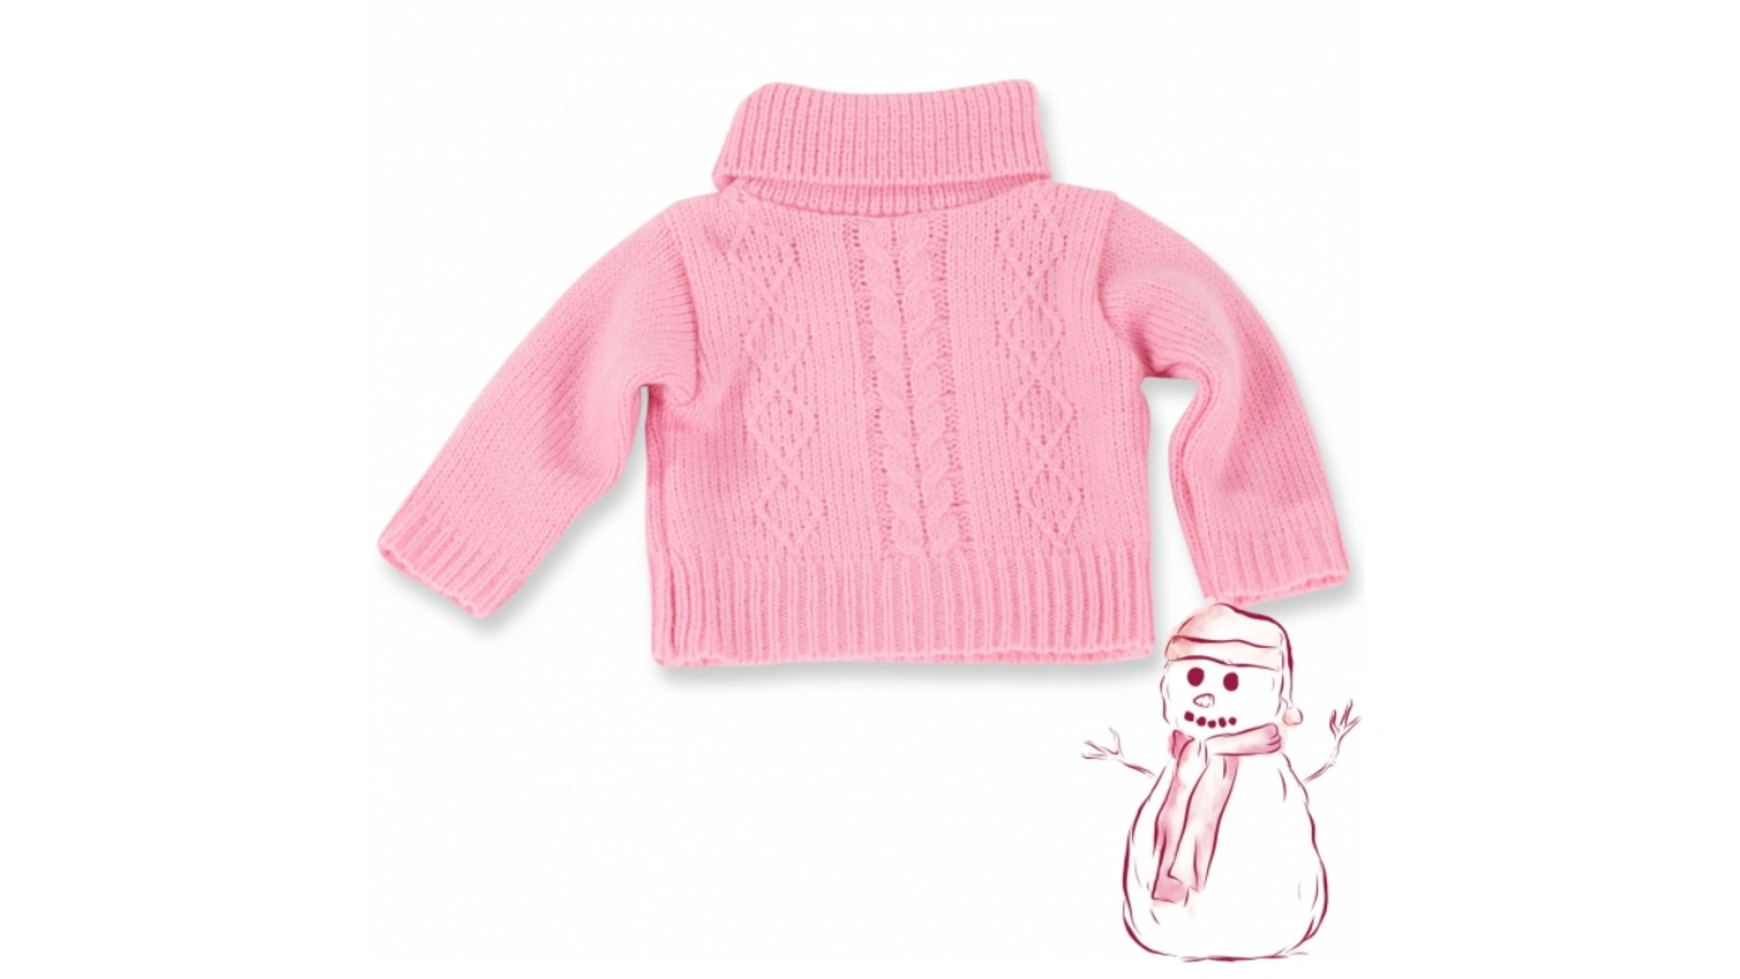 Размер косичек свитера м/л/хl Götz Puppenmanufaktur свитер размер 42 48 розовый